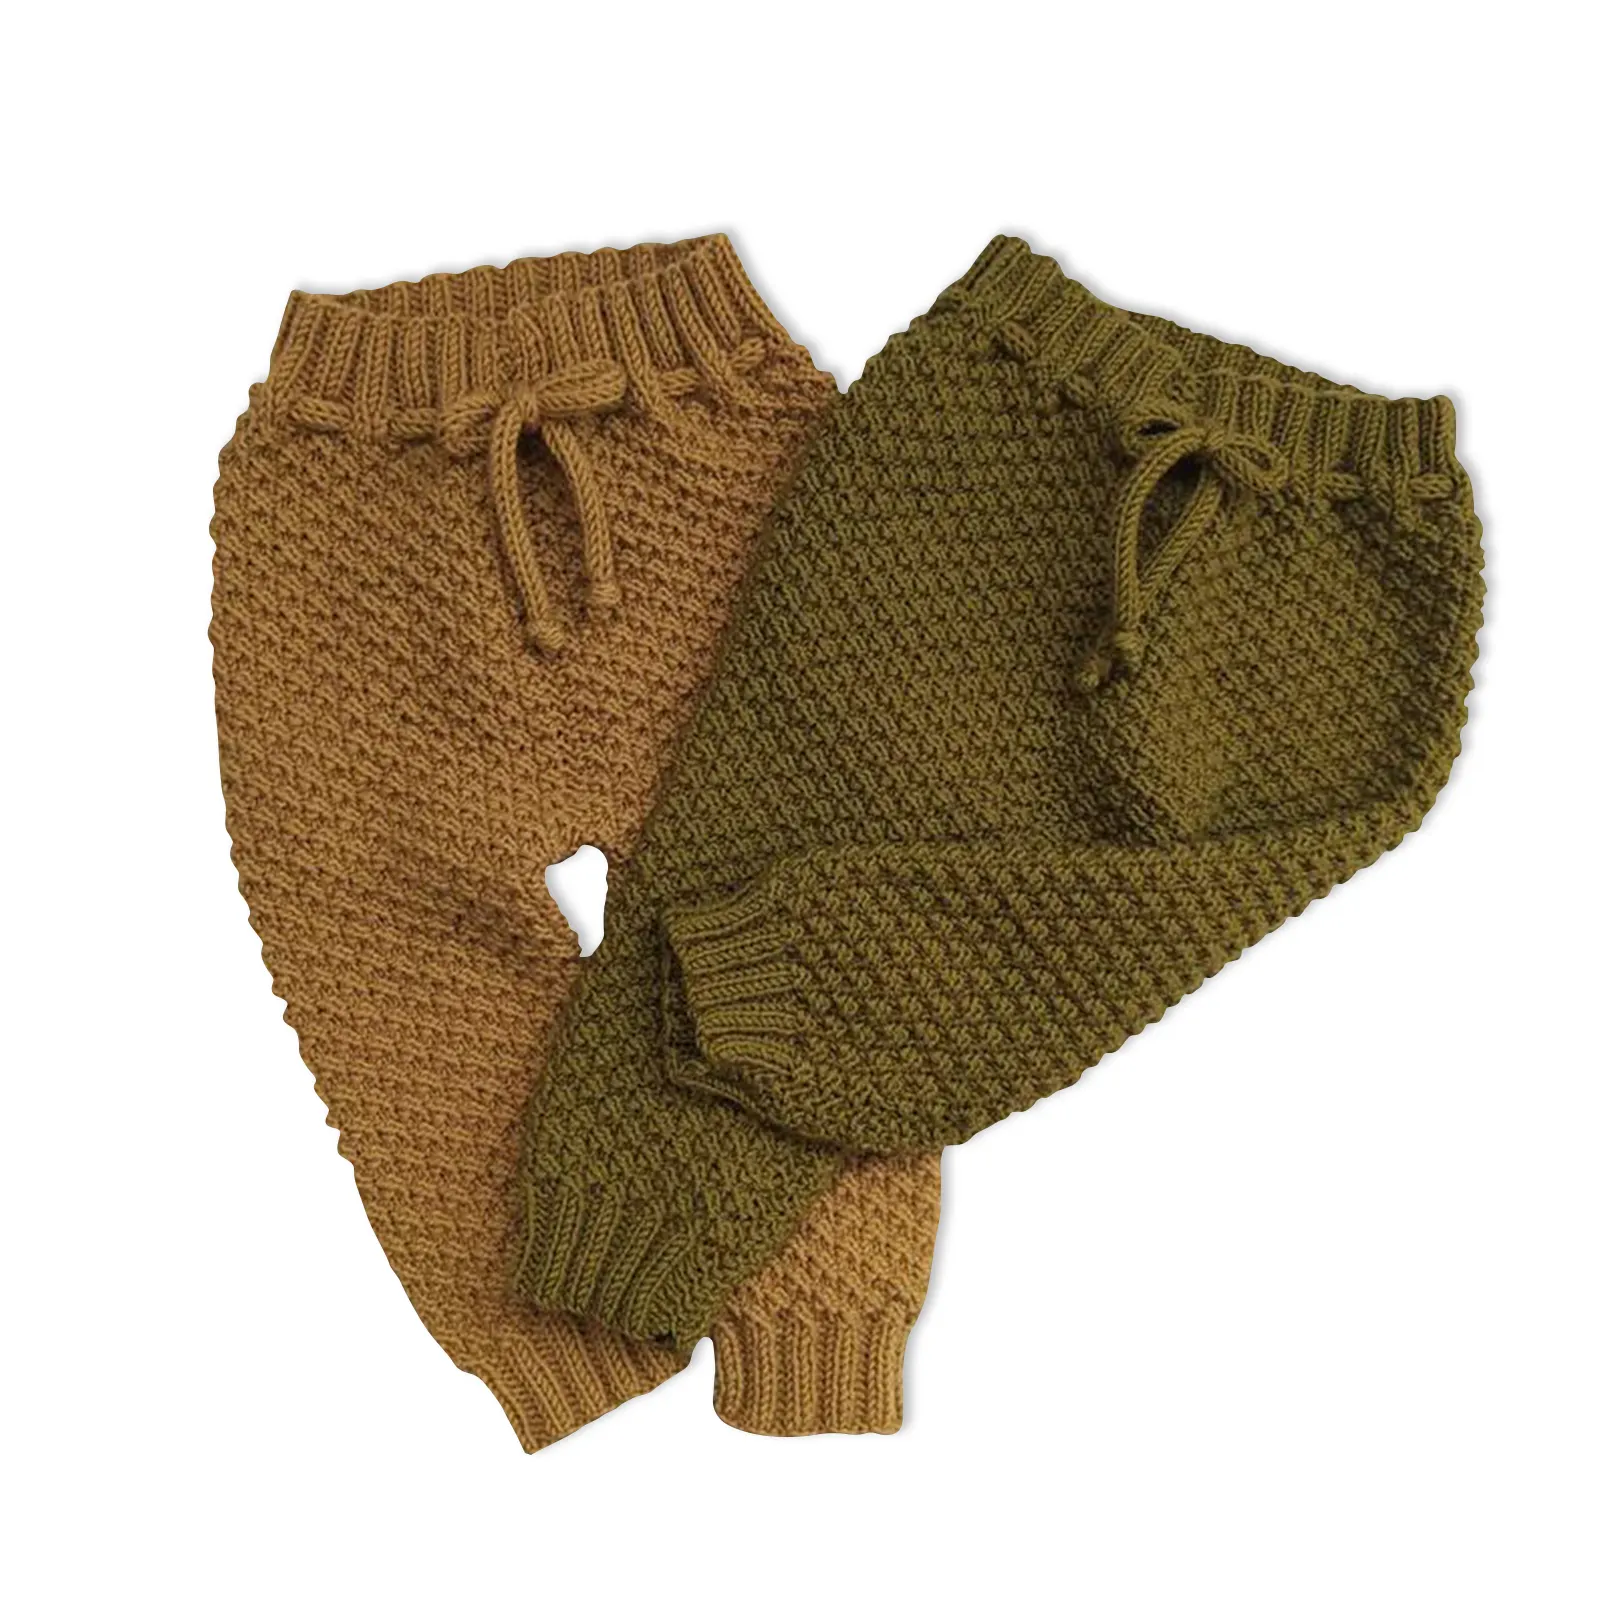 Freya customized Baby Pants Knitting Pattern Baby Pants Knitting Baby Truien 0-24 Months